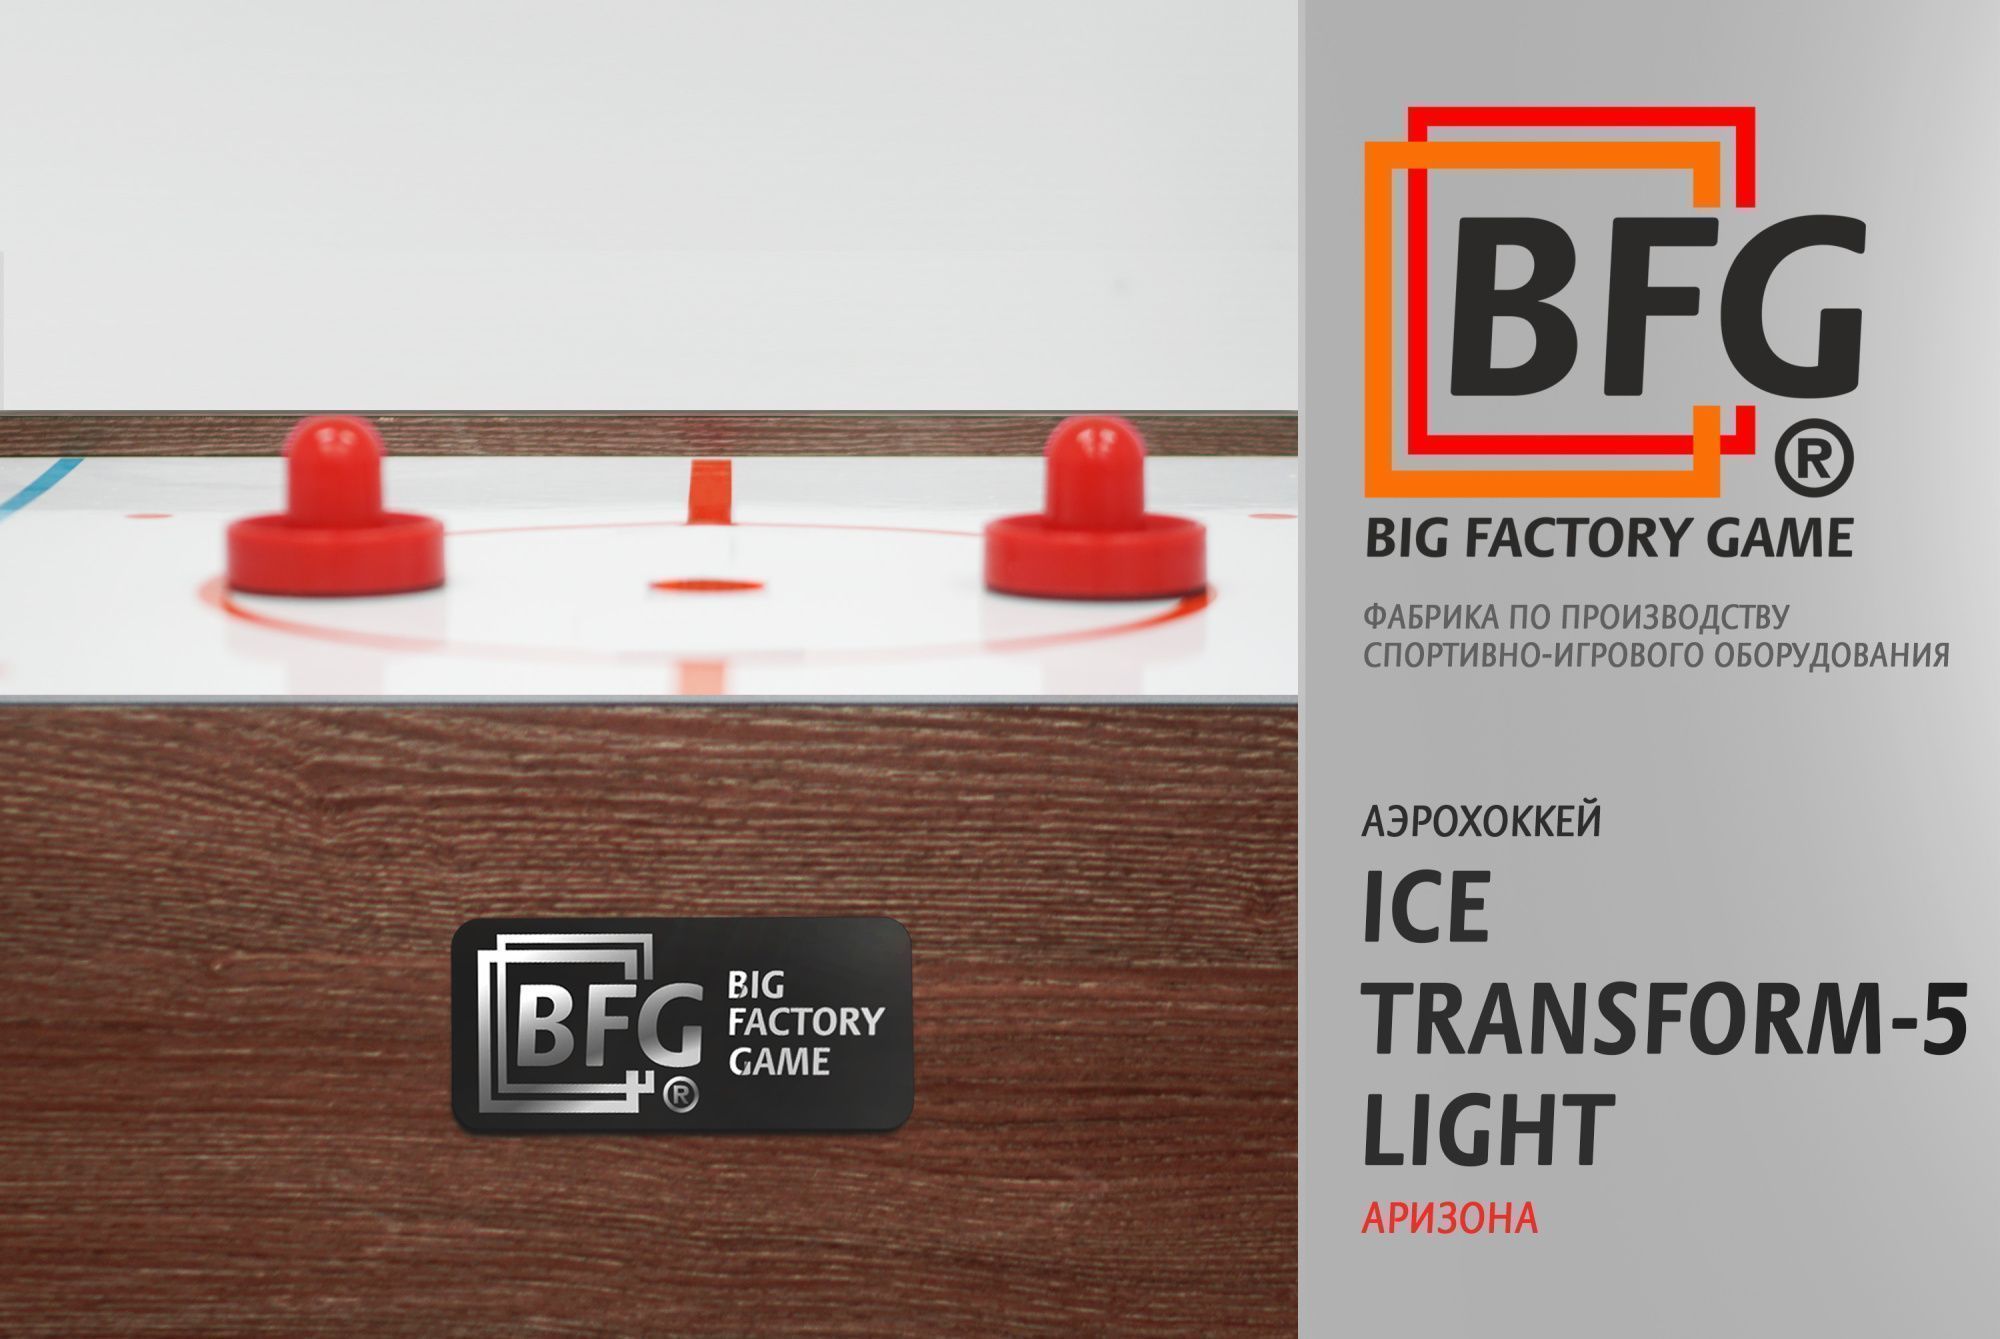 Аэрохоккей BFG Ice Transform 5 (Аризона) Light